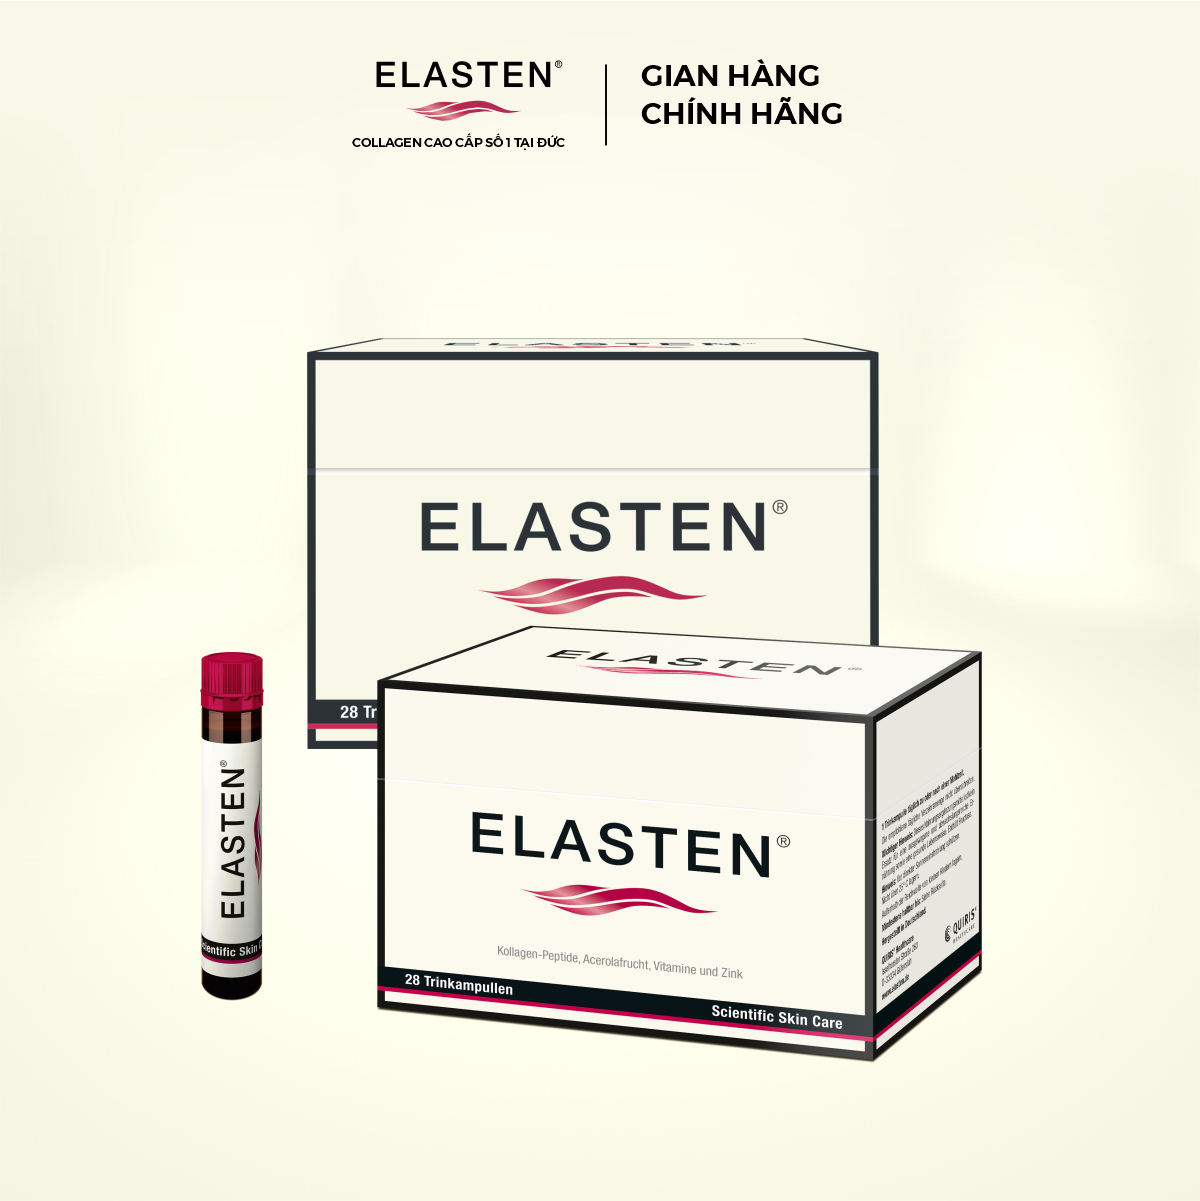 Bộ 2 Hộp Collagen Elasten Giúp Da Căng Mịn, Chống Lão Hóa, Tóc Chắc Khỏe - Collagen Số 1 Tại Đức